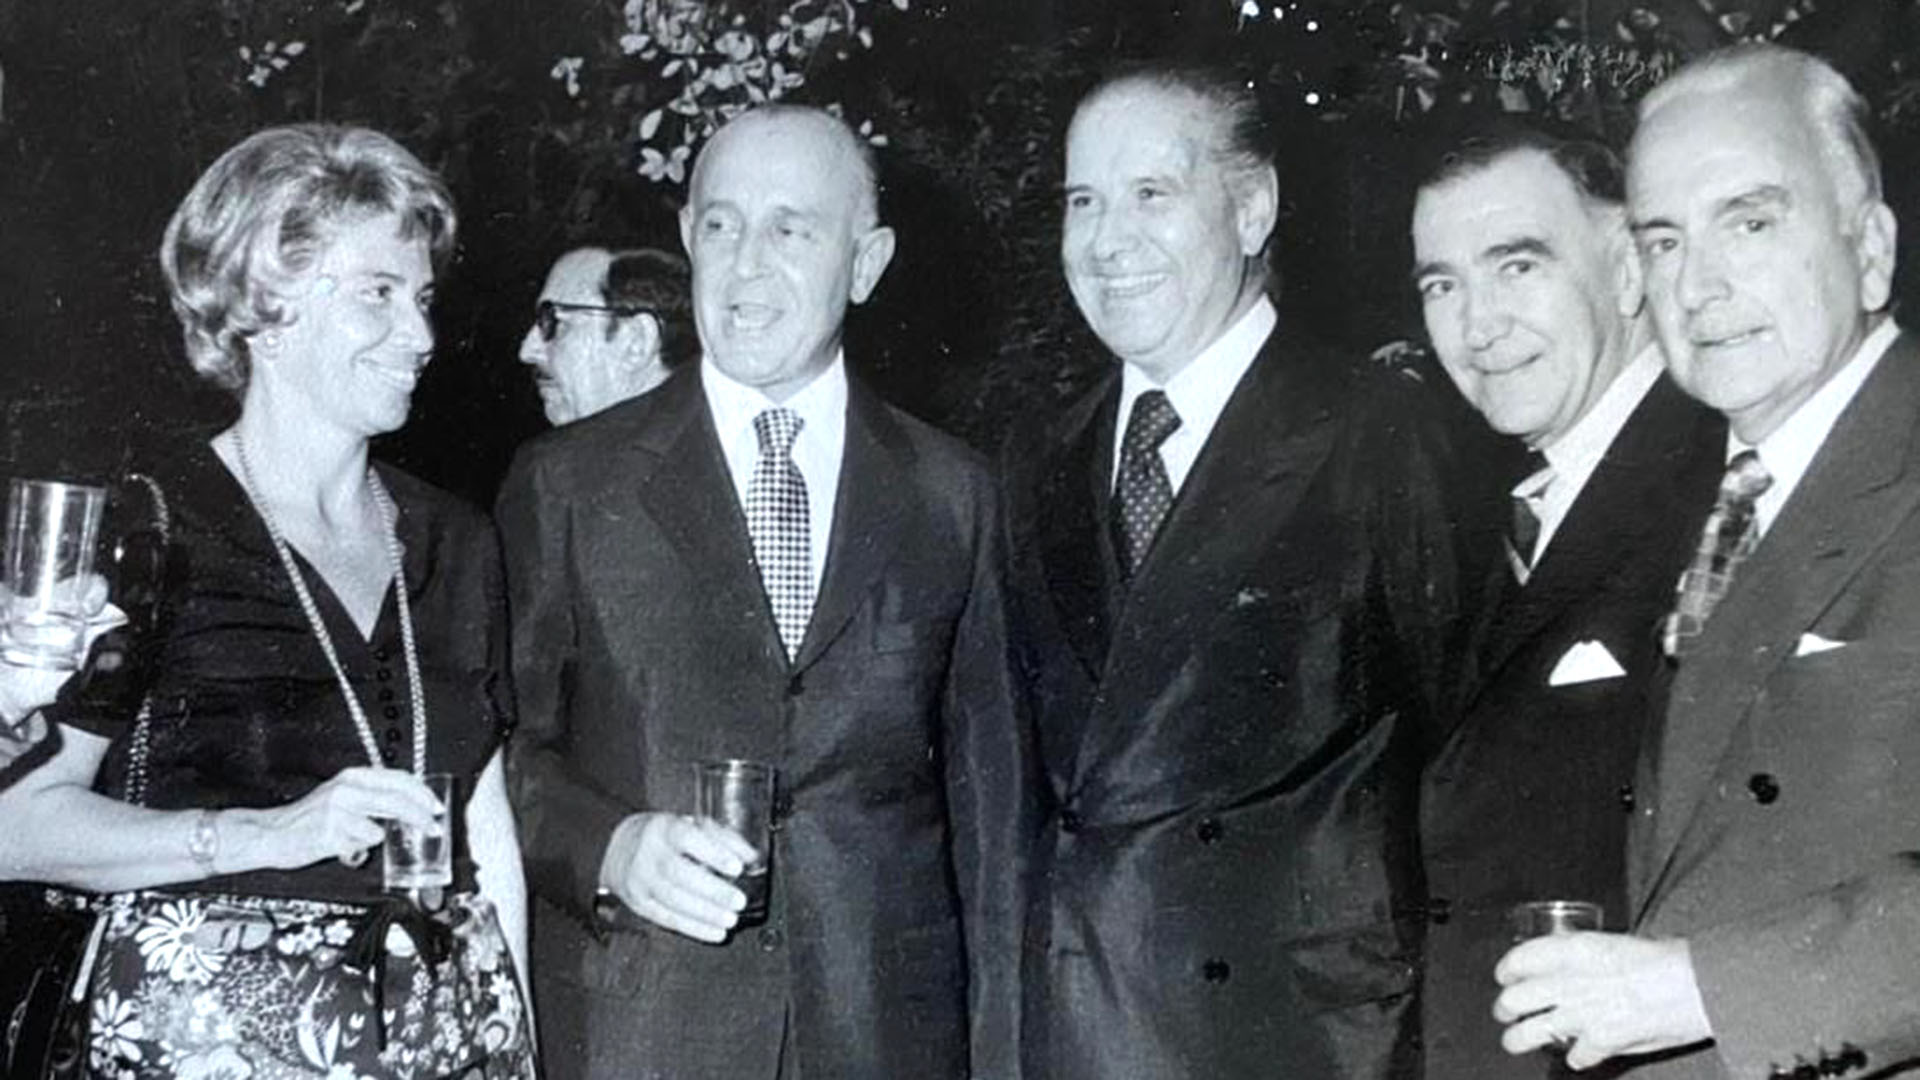 El Ministro del Interior, Benito Llambí, y su esposa Beatriz Haedo. A la derecha, Marcelo Sánchez Sorondo.